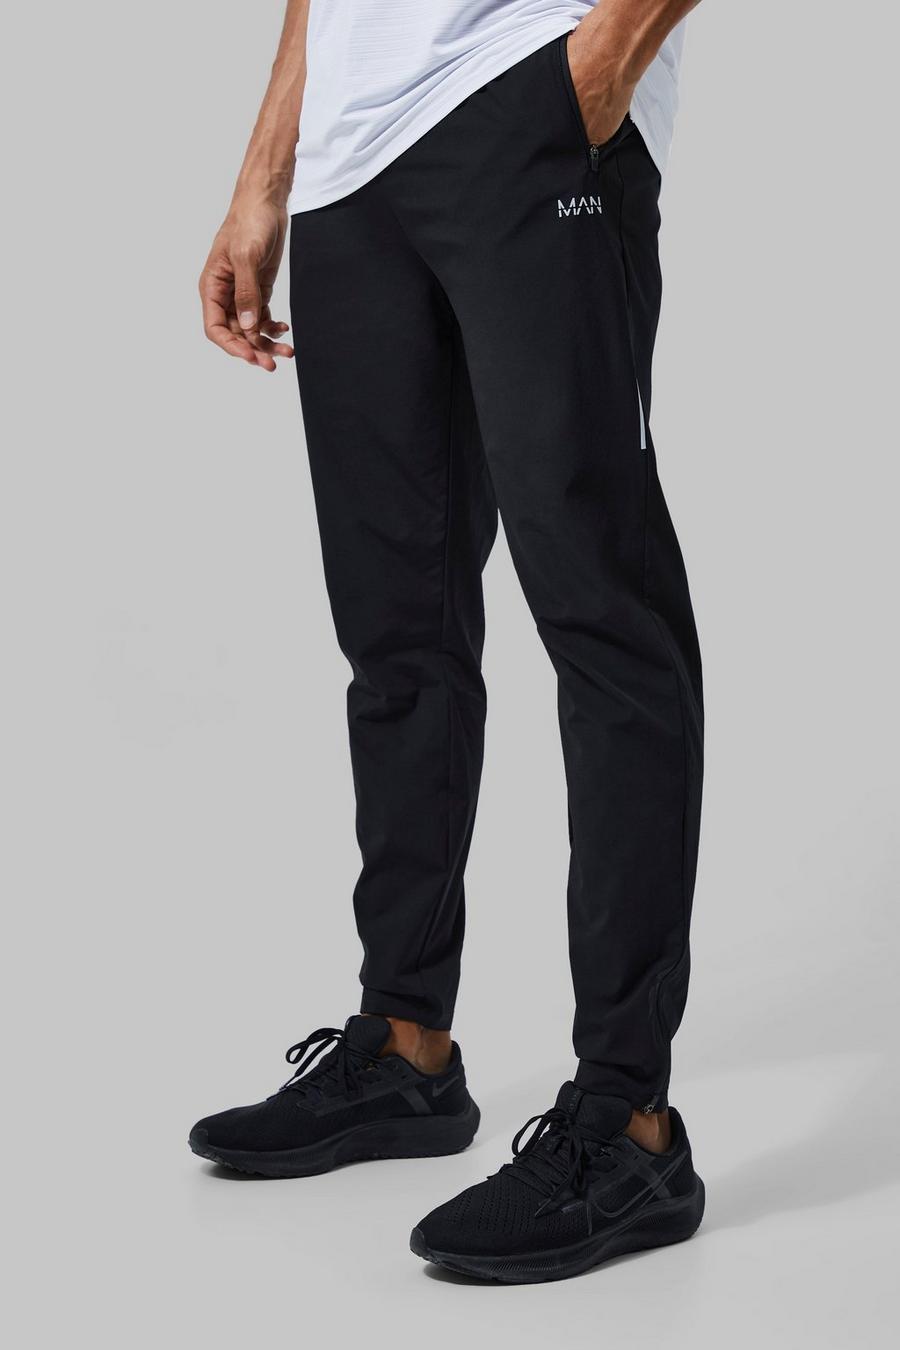 Pantaloni tuta Tall Man Active leggeri per alta performance, Black image number 1